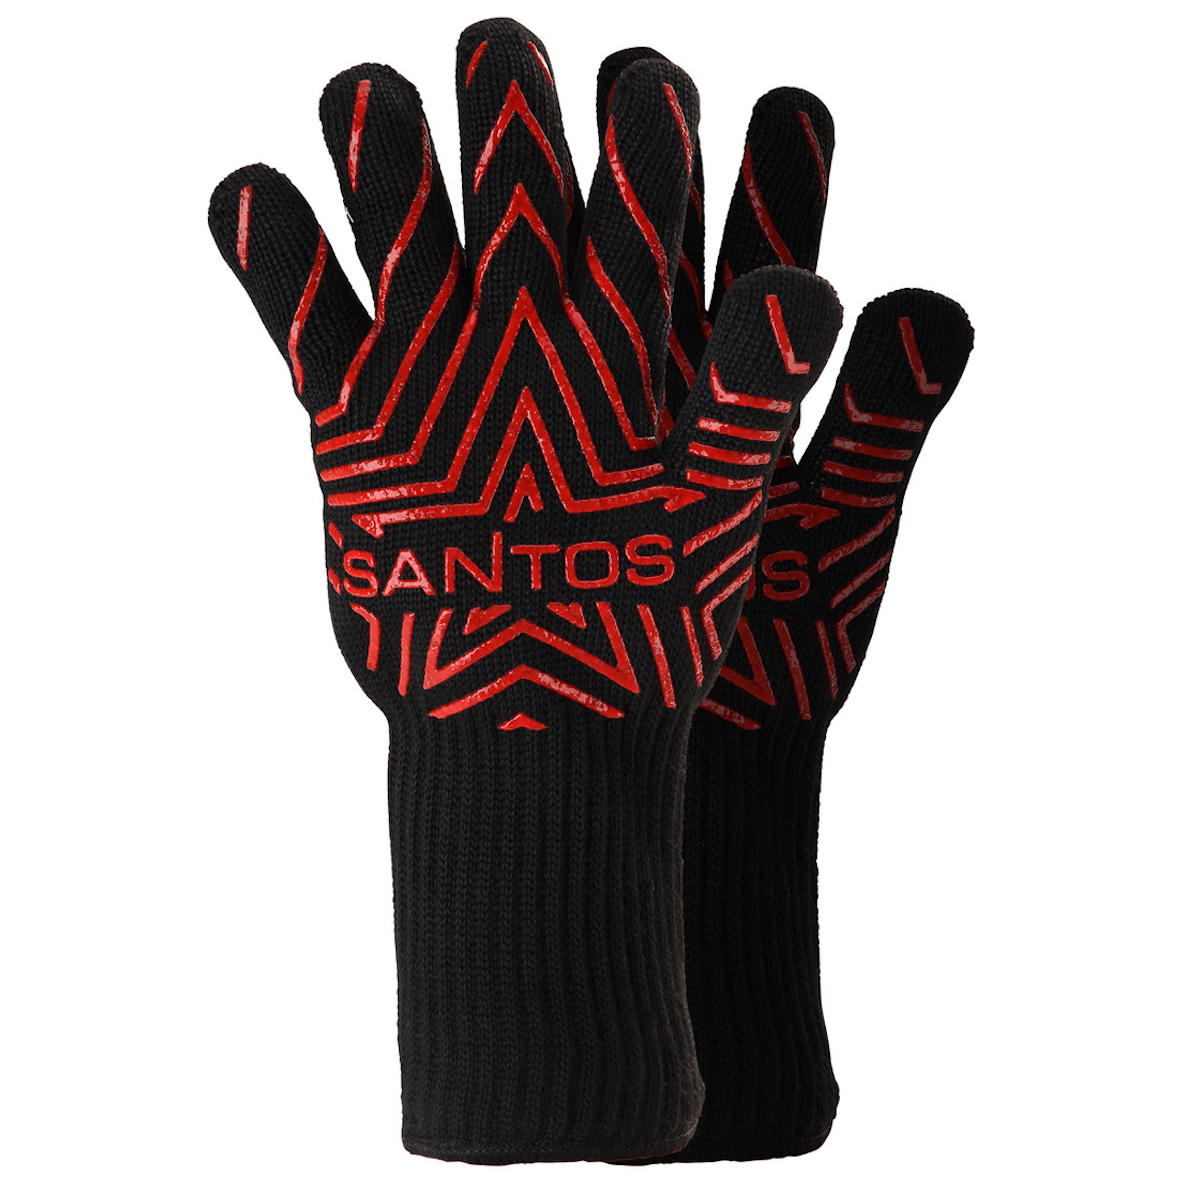 SANTOS Grill Handschuh (Paar) hitzebeständig bis 350 °C, Universalgröße